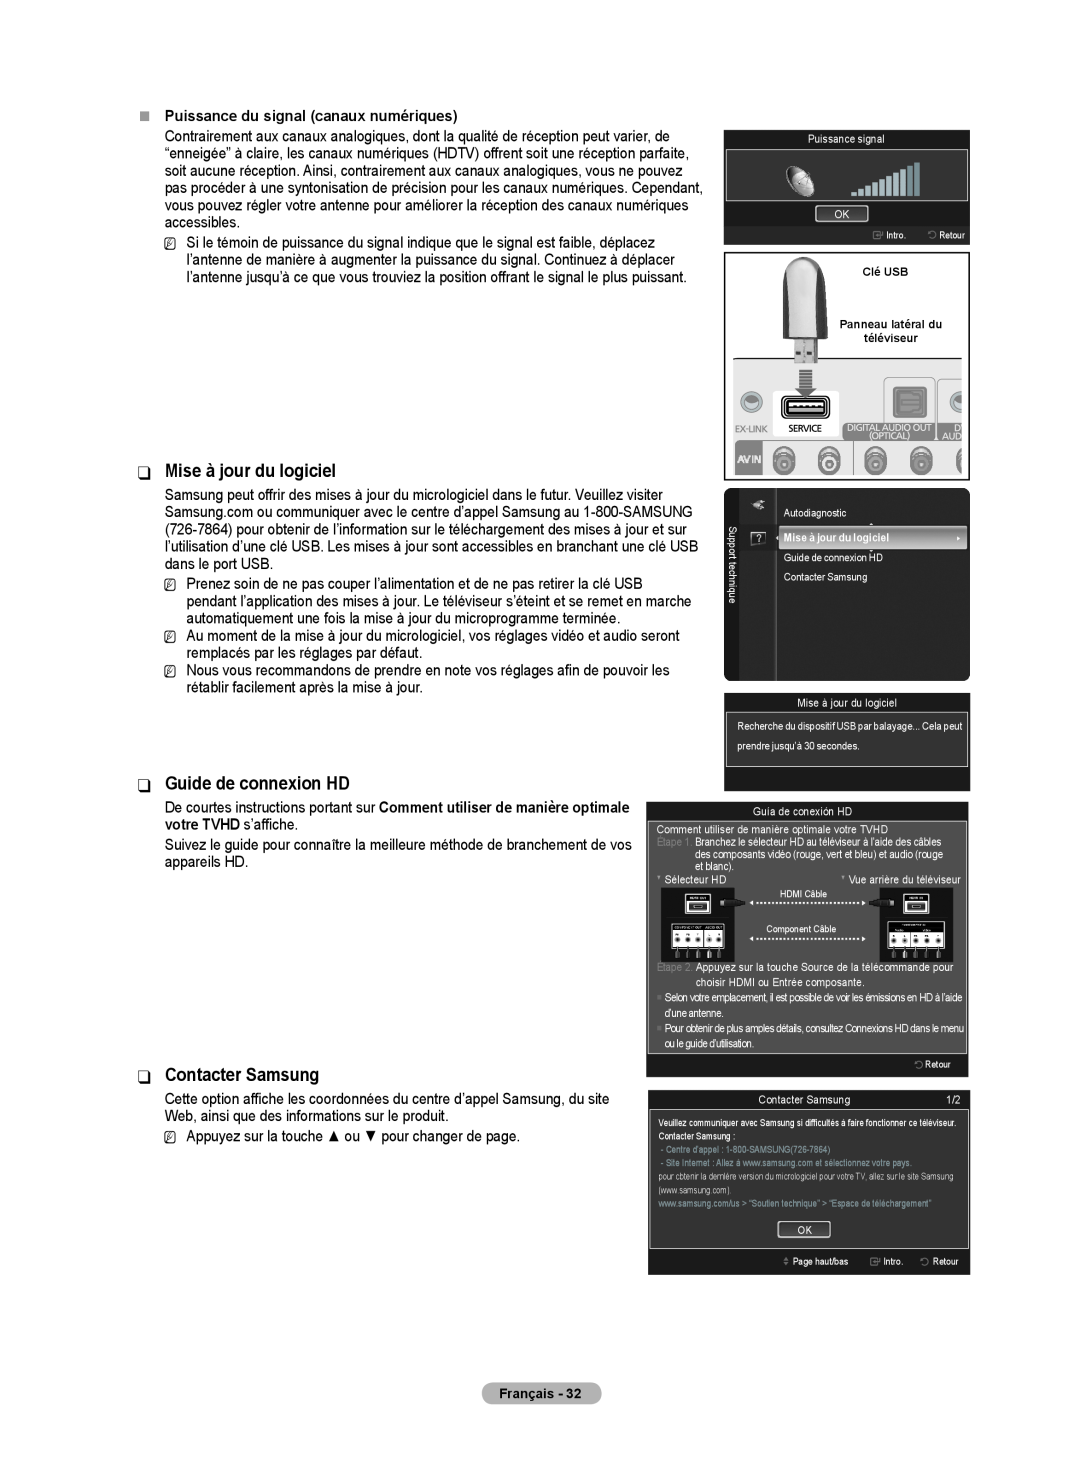 Samsung BN68-02426A-00 user manual Mise à jour du logiciel, Guide de connexion HD, Contacter Samsung 